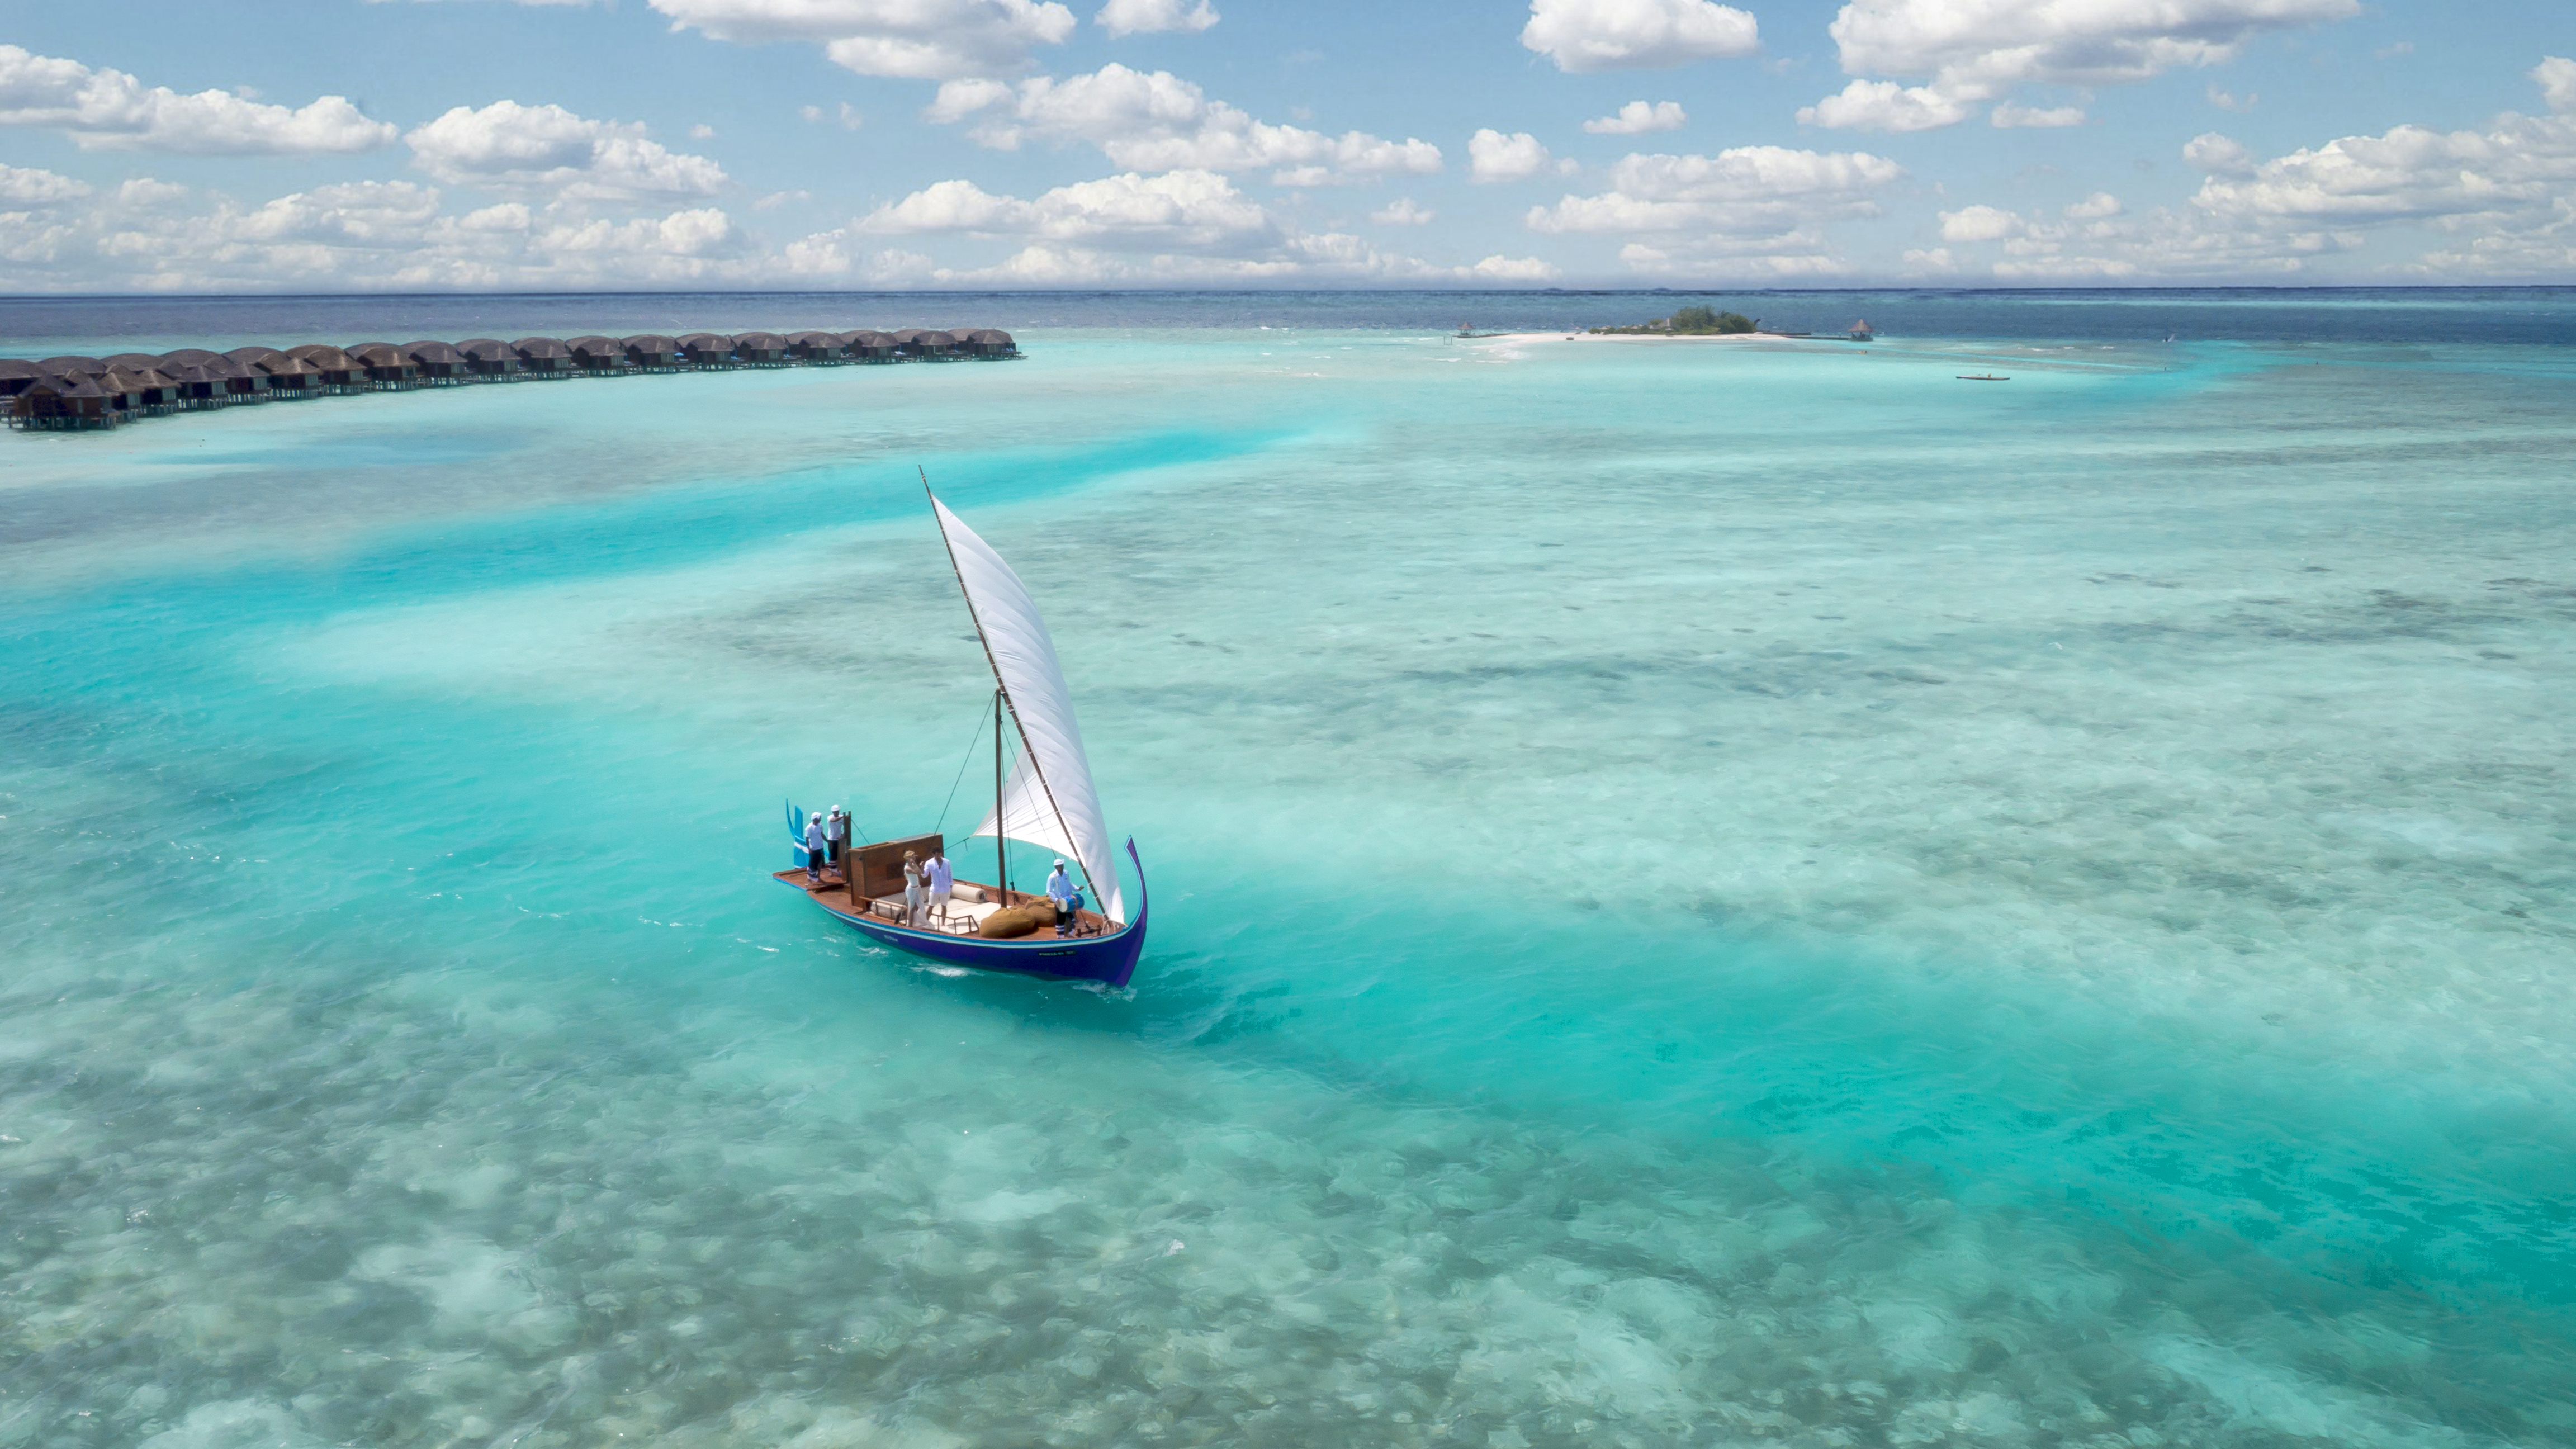 Изгиб океана. Лодка Дхони Мальдивы. Индийский океан Баунти. Мальдивы Аравийское море. Мальдивы Тодду голубая Лагуна.